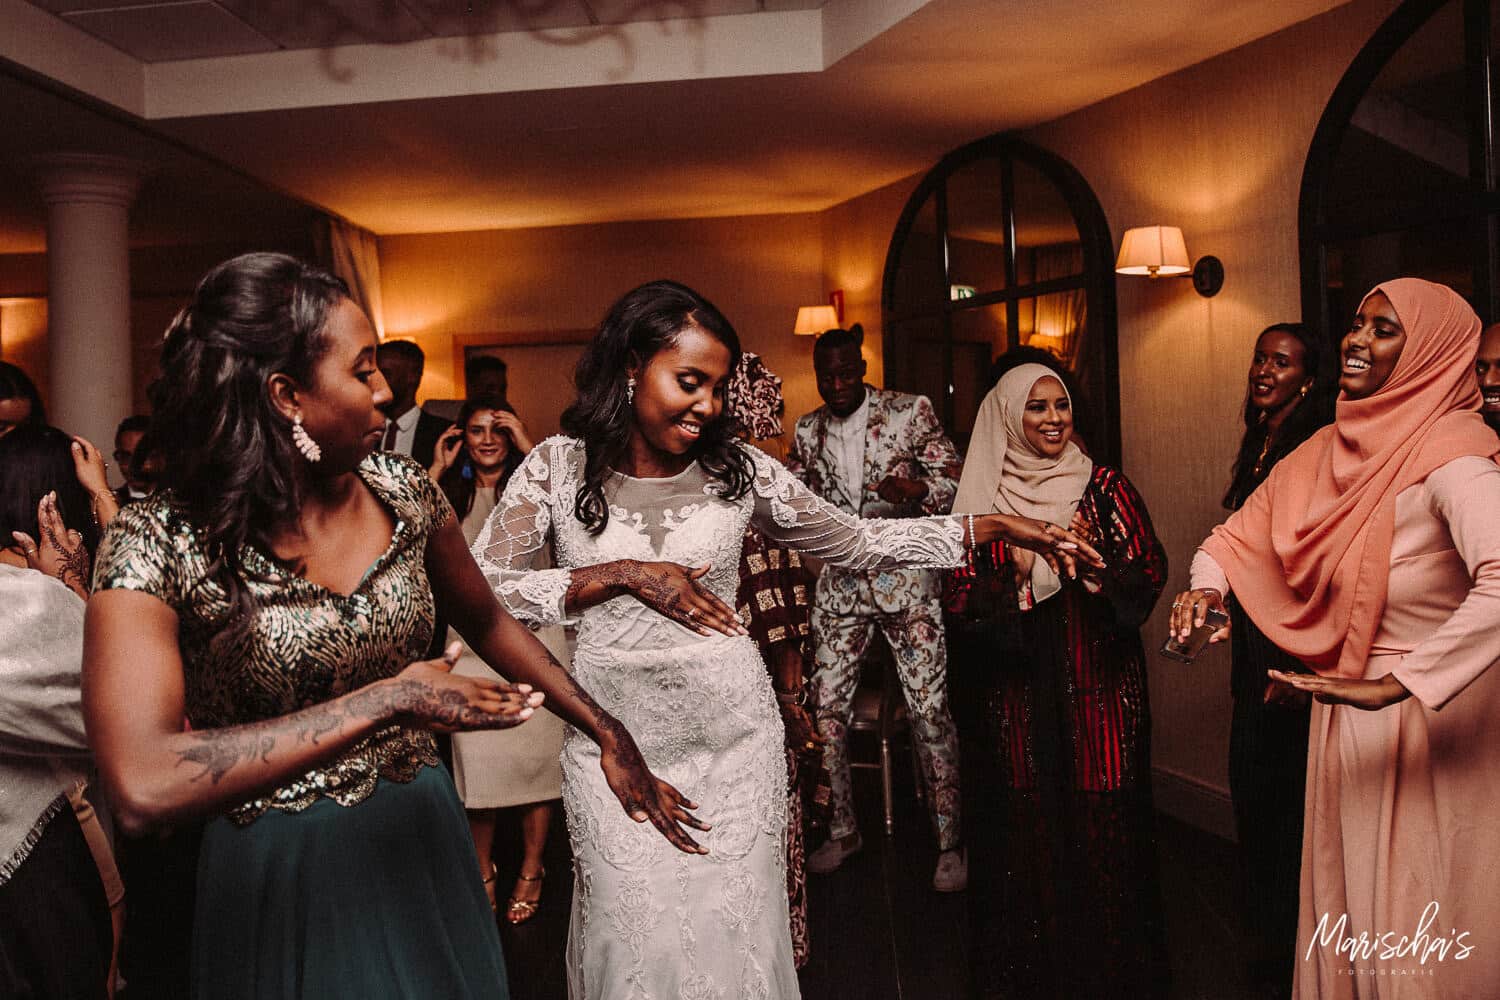 Huwelijksfotograaf voor een huwelijk in regio vlaams brabant